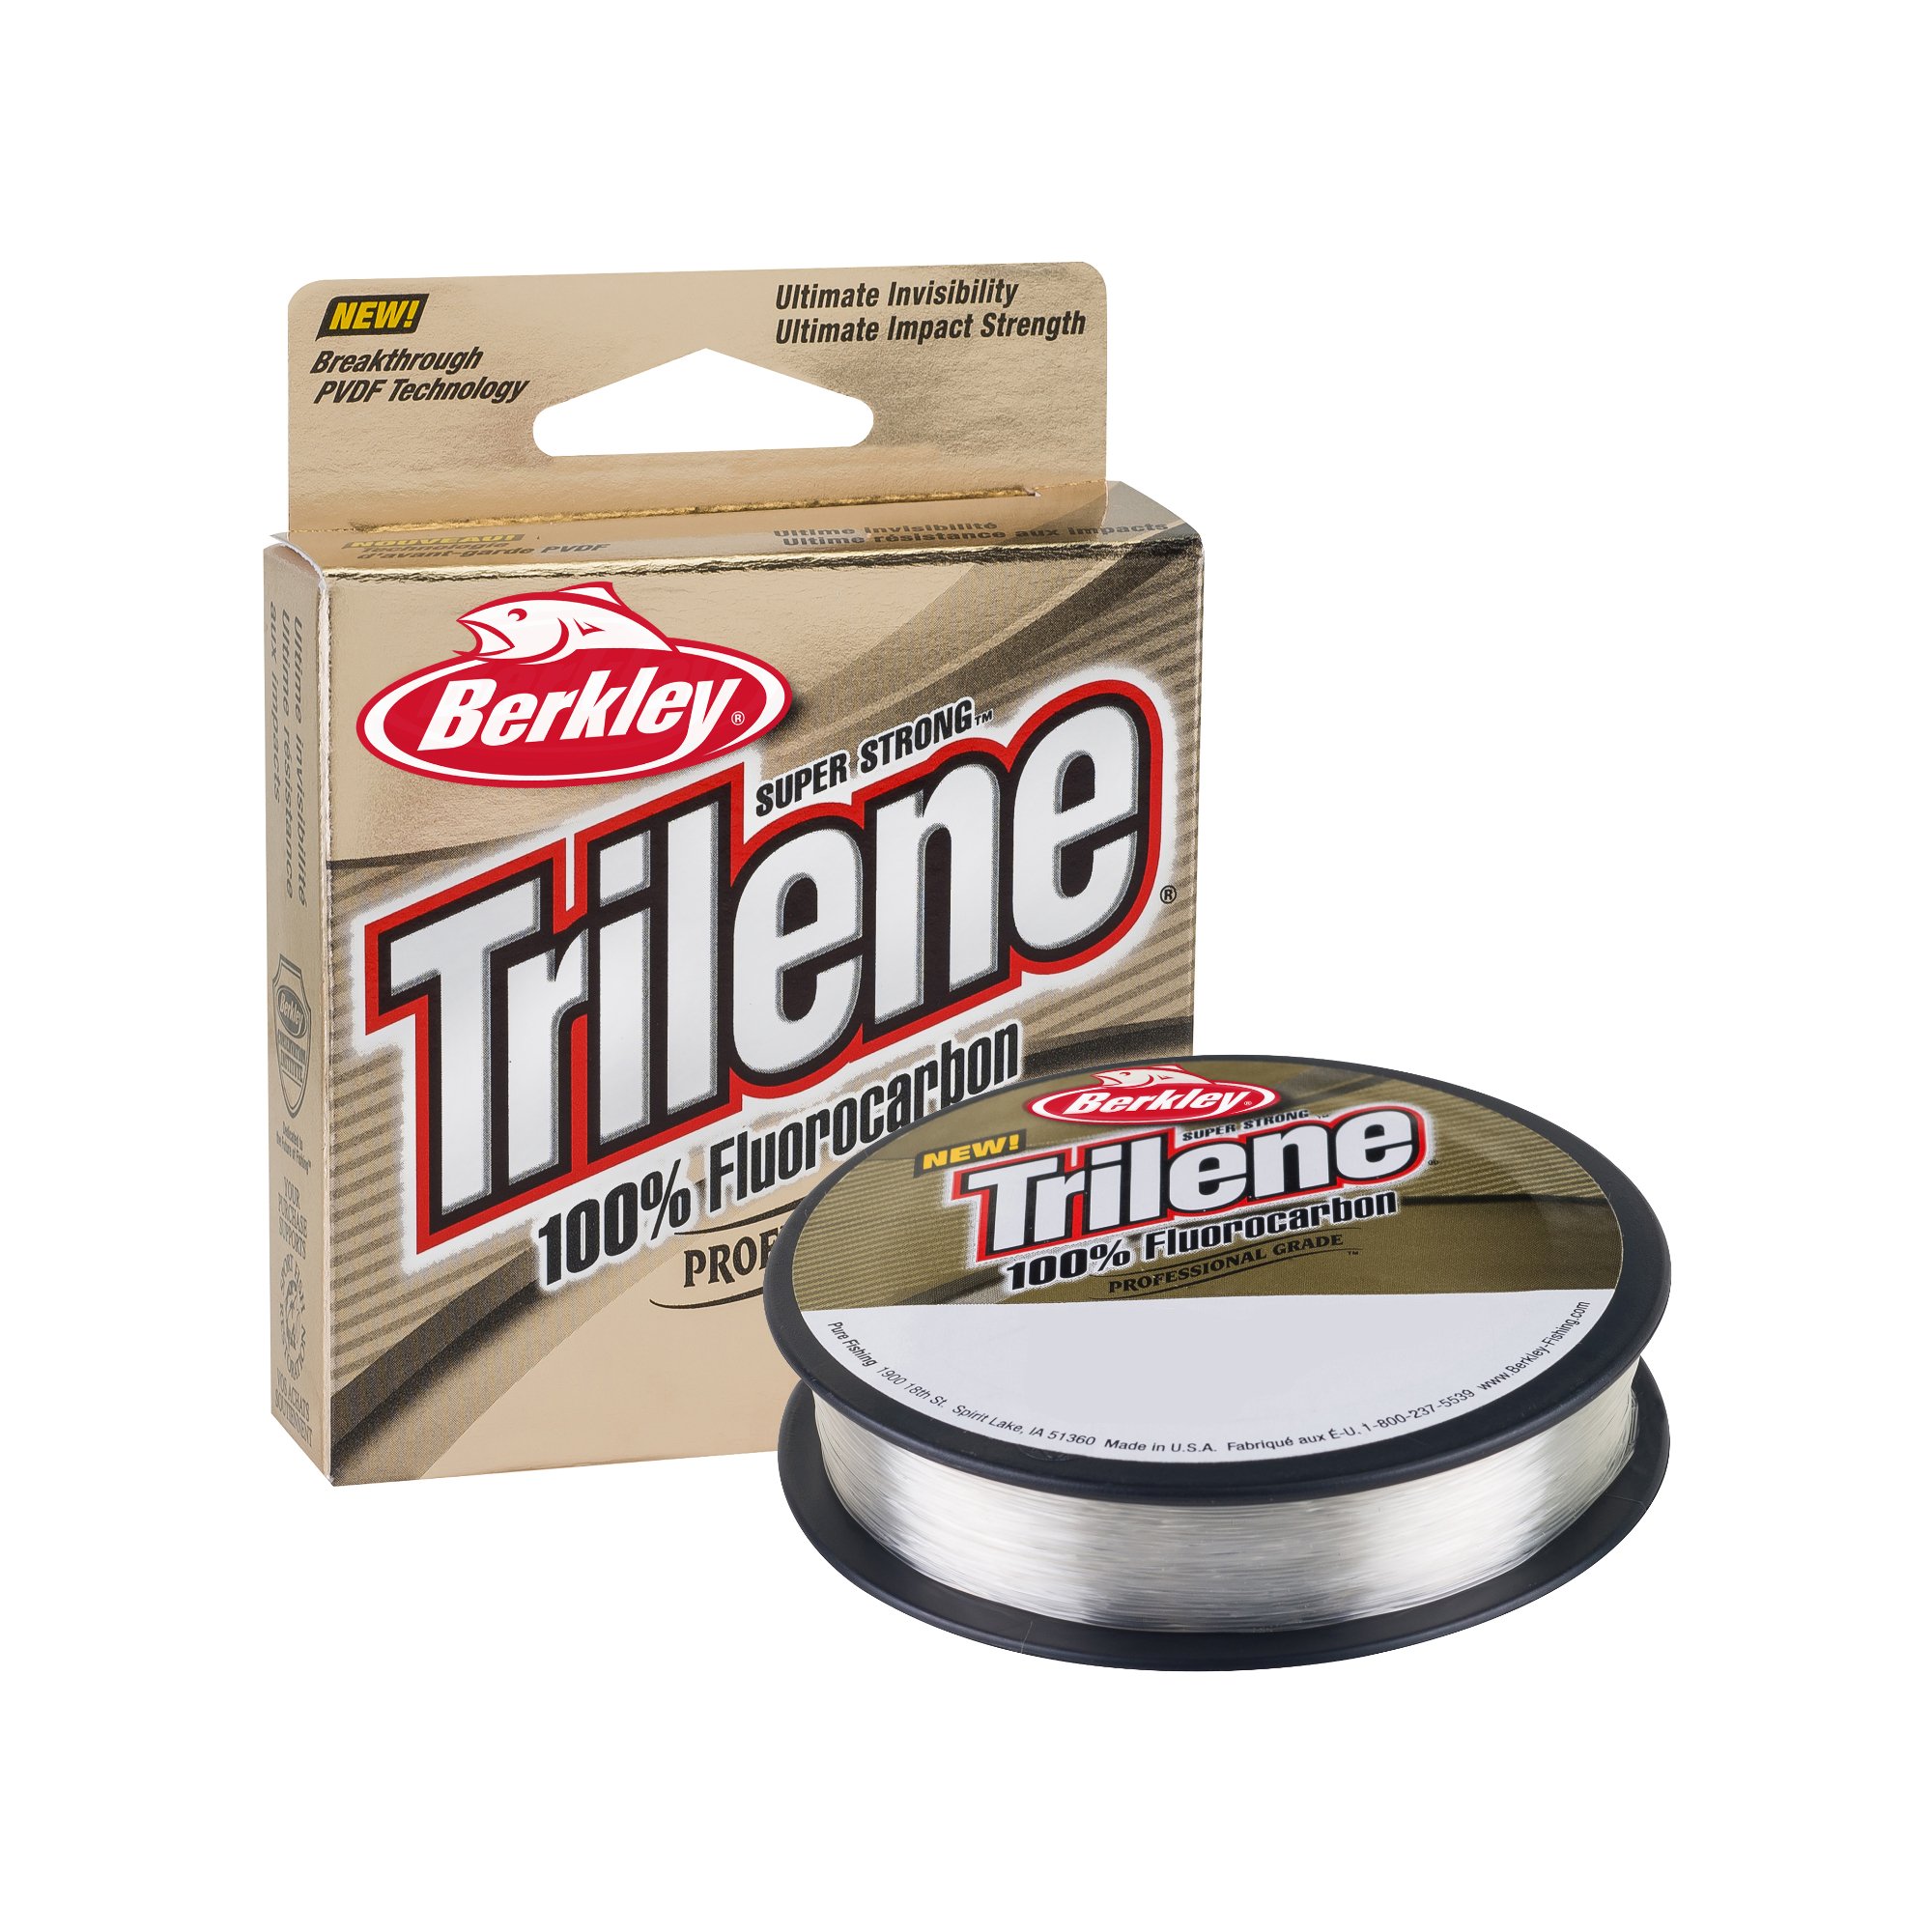 Berkley Trilene 100% Fluorocarbon Fishing Line/Leader Material 110